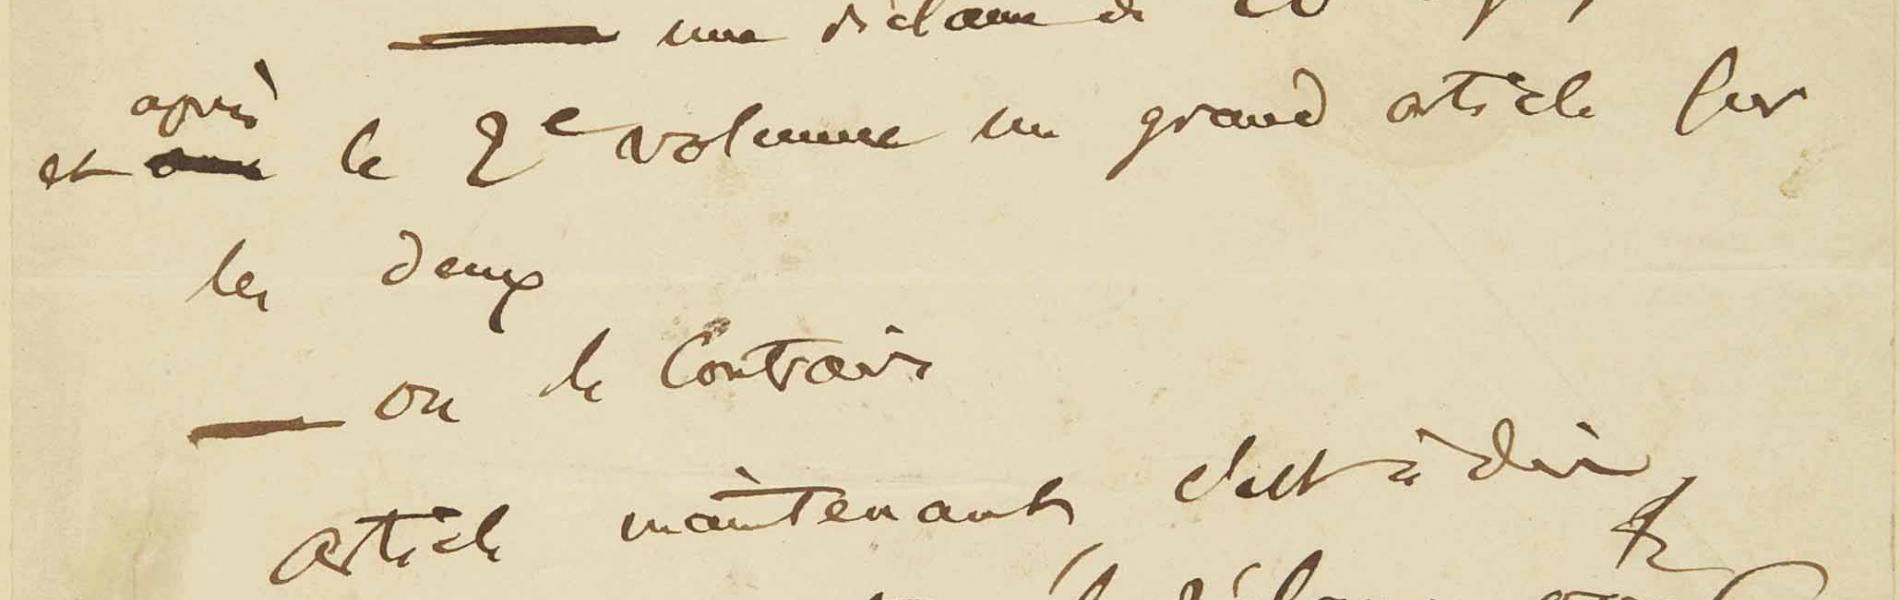 Lettre autographe signée "Ch. Baudelaire", datée "mardi 18 mars 1856"